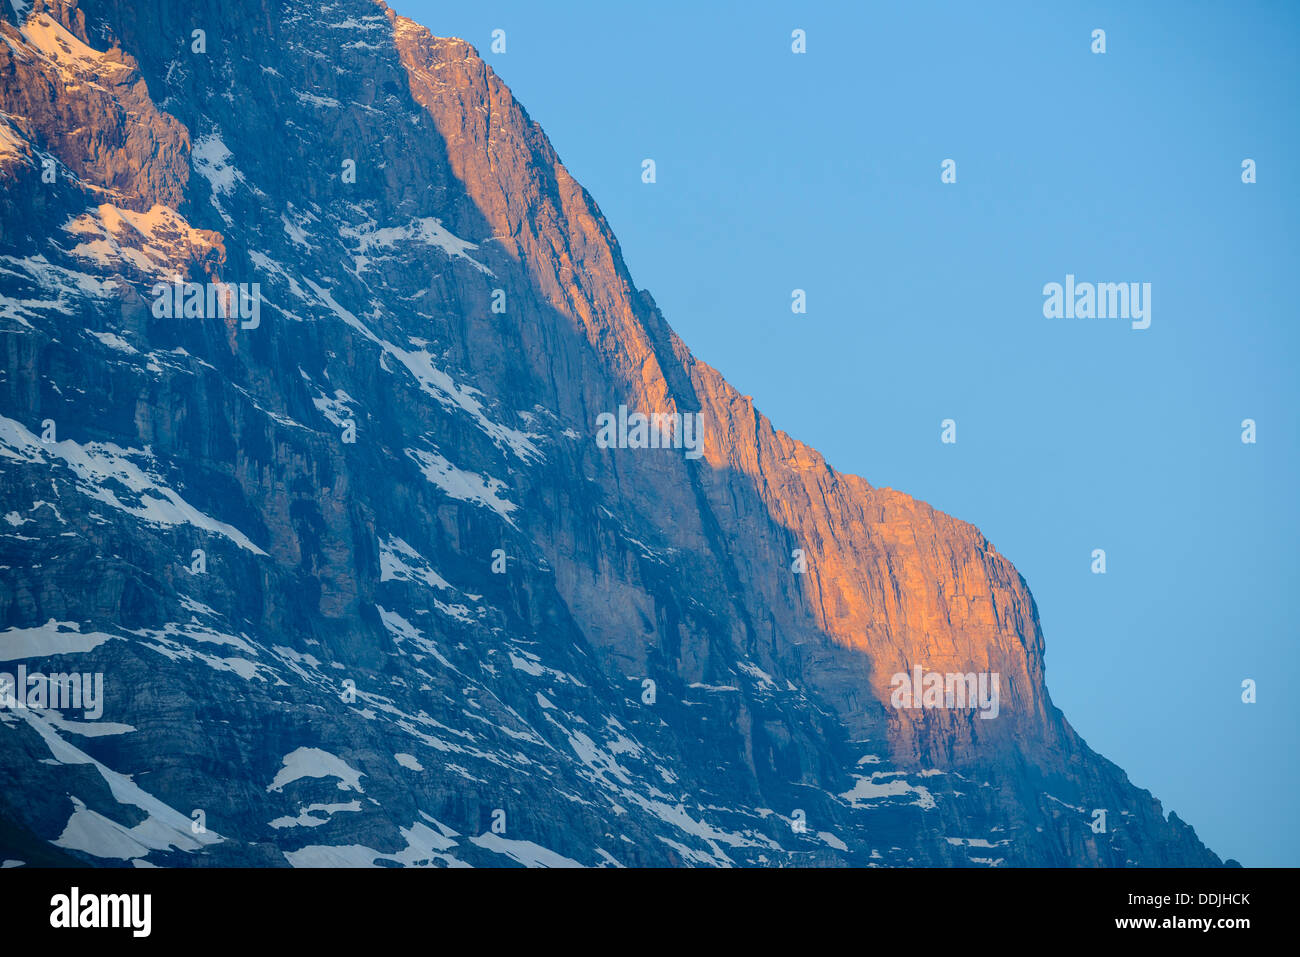 Vista dettagliata dell'Eiger da Grindelwald, Svizzera mattina presto luce. Parte del fronte nord in ombra al centro a sinistra Foto Stock